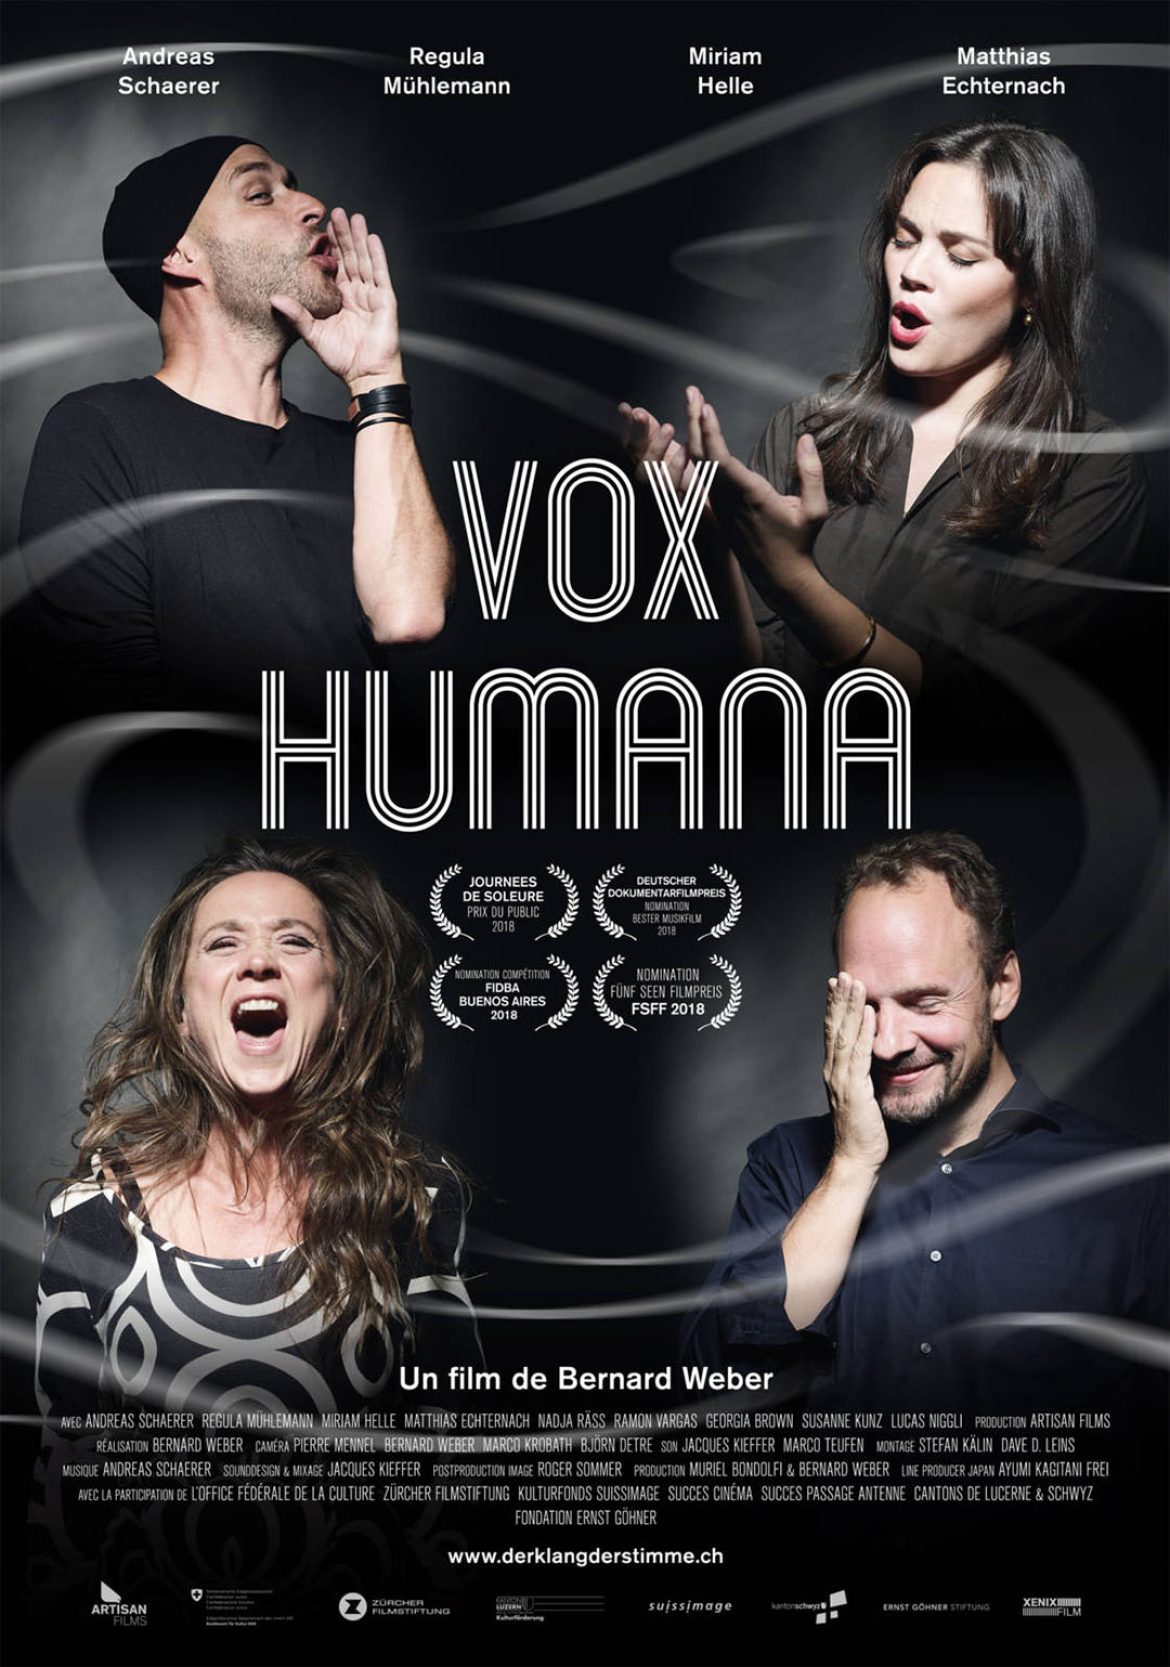 Vox Humana (VOst)